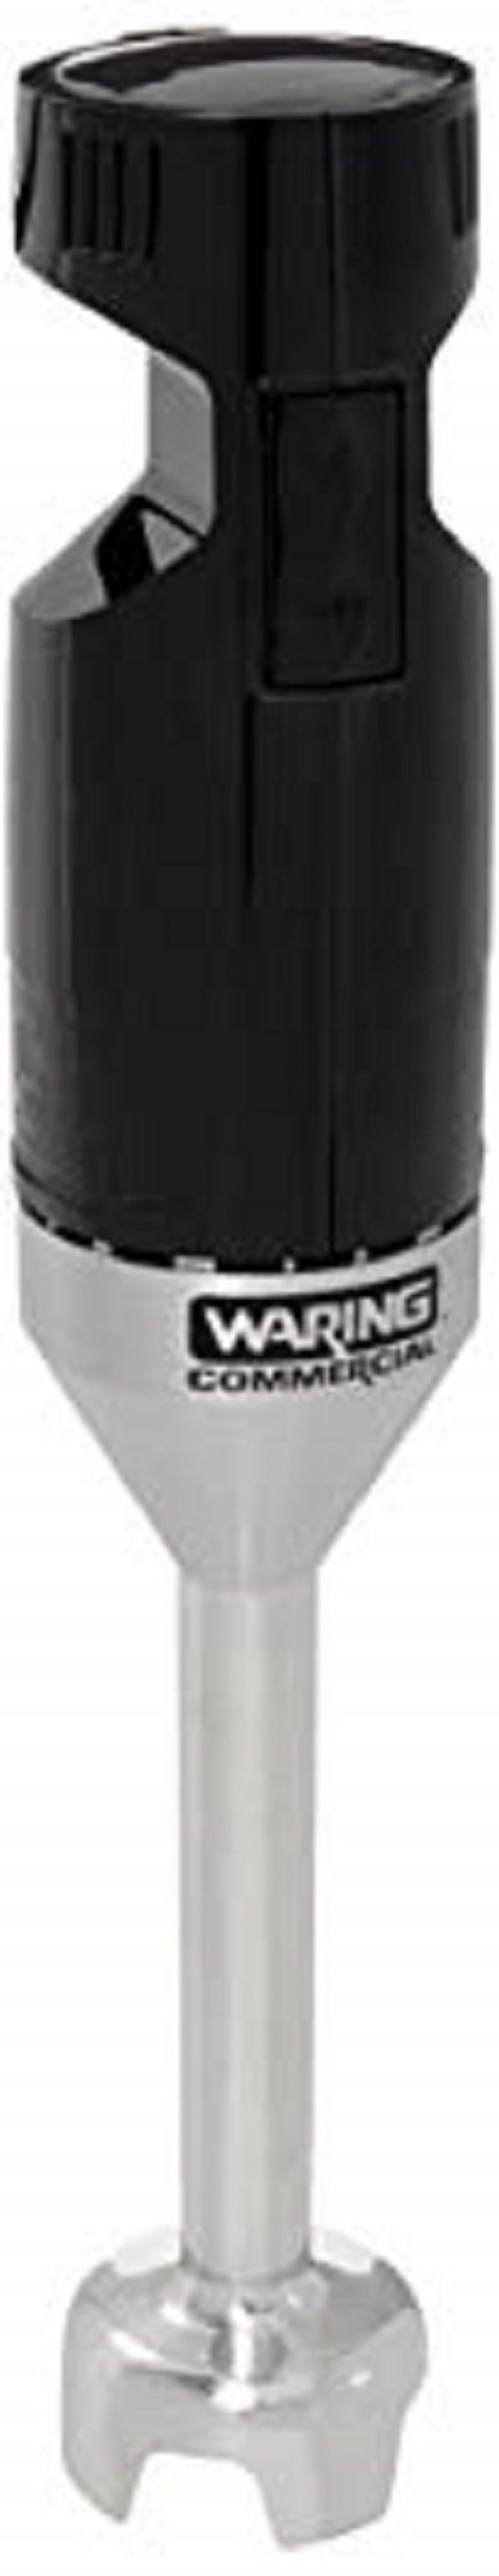 Waring WSB33X Quik Stik Immersion Blender